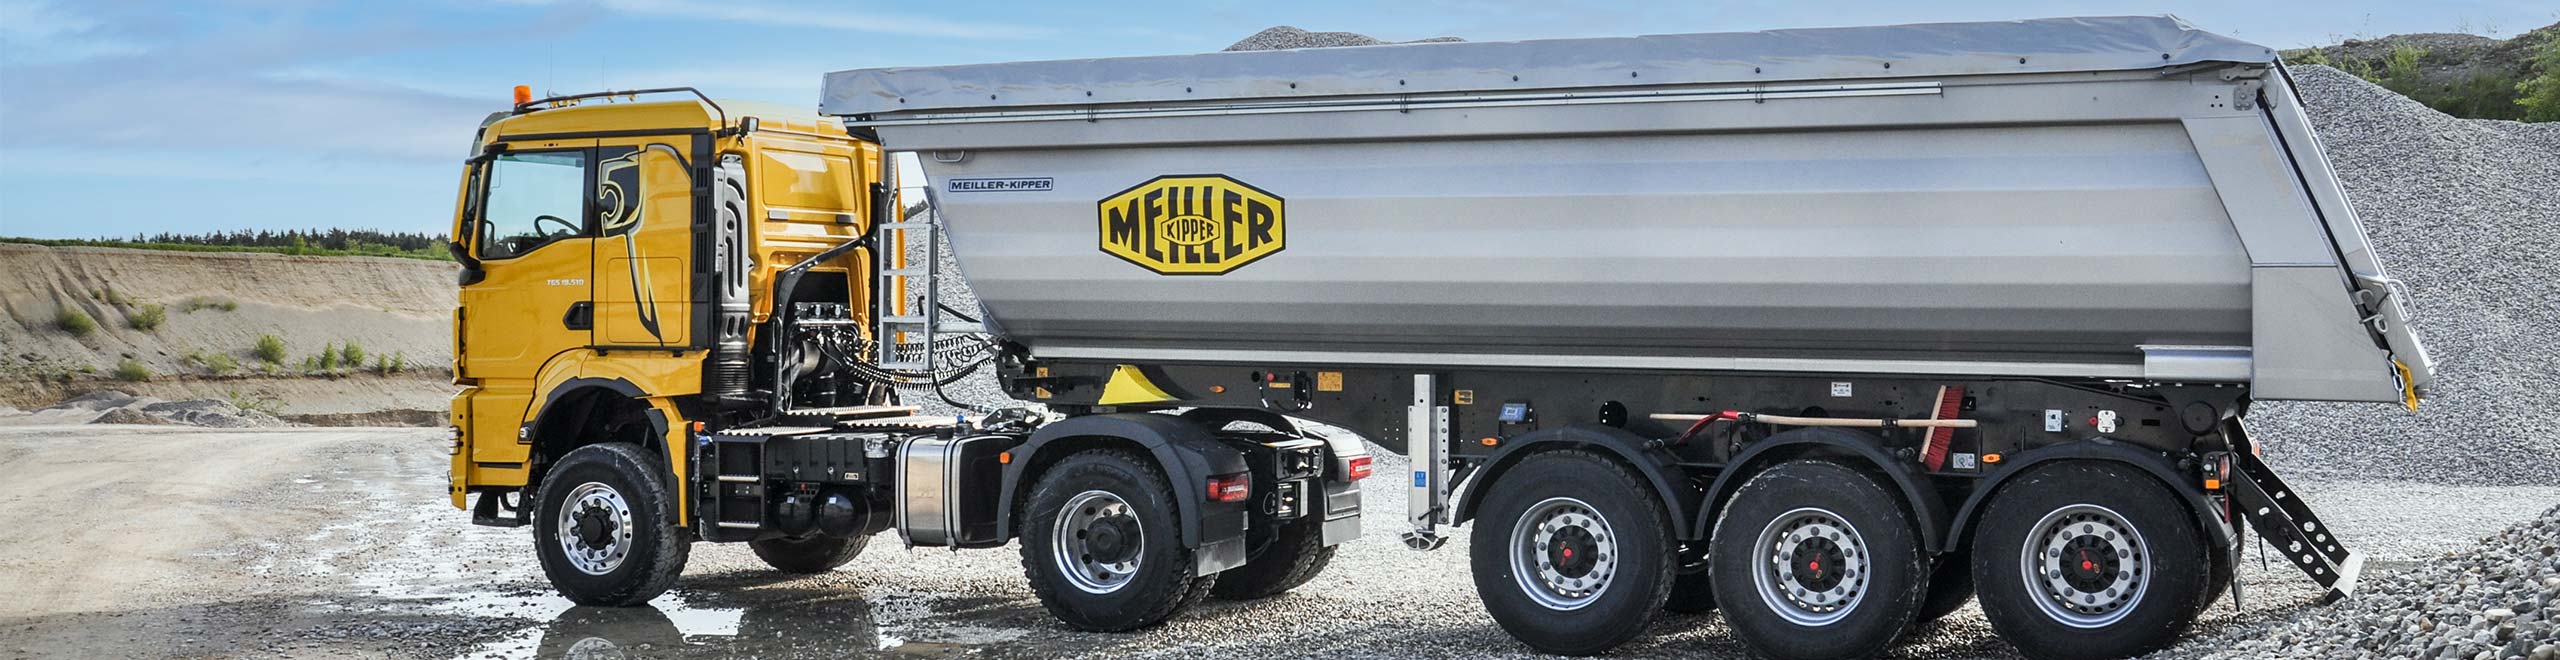 MEILLER tipping semi-trailer